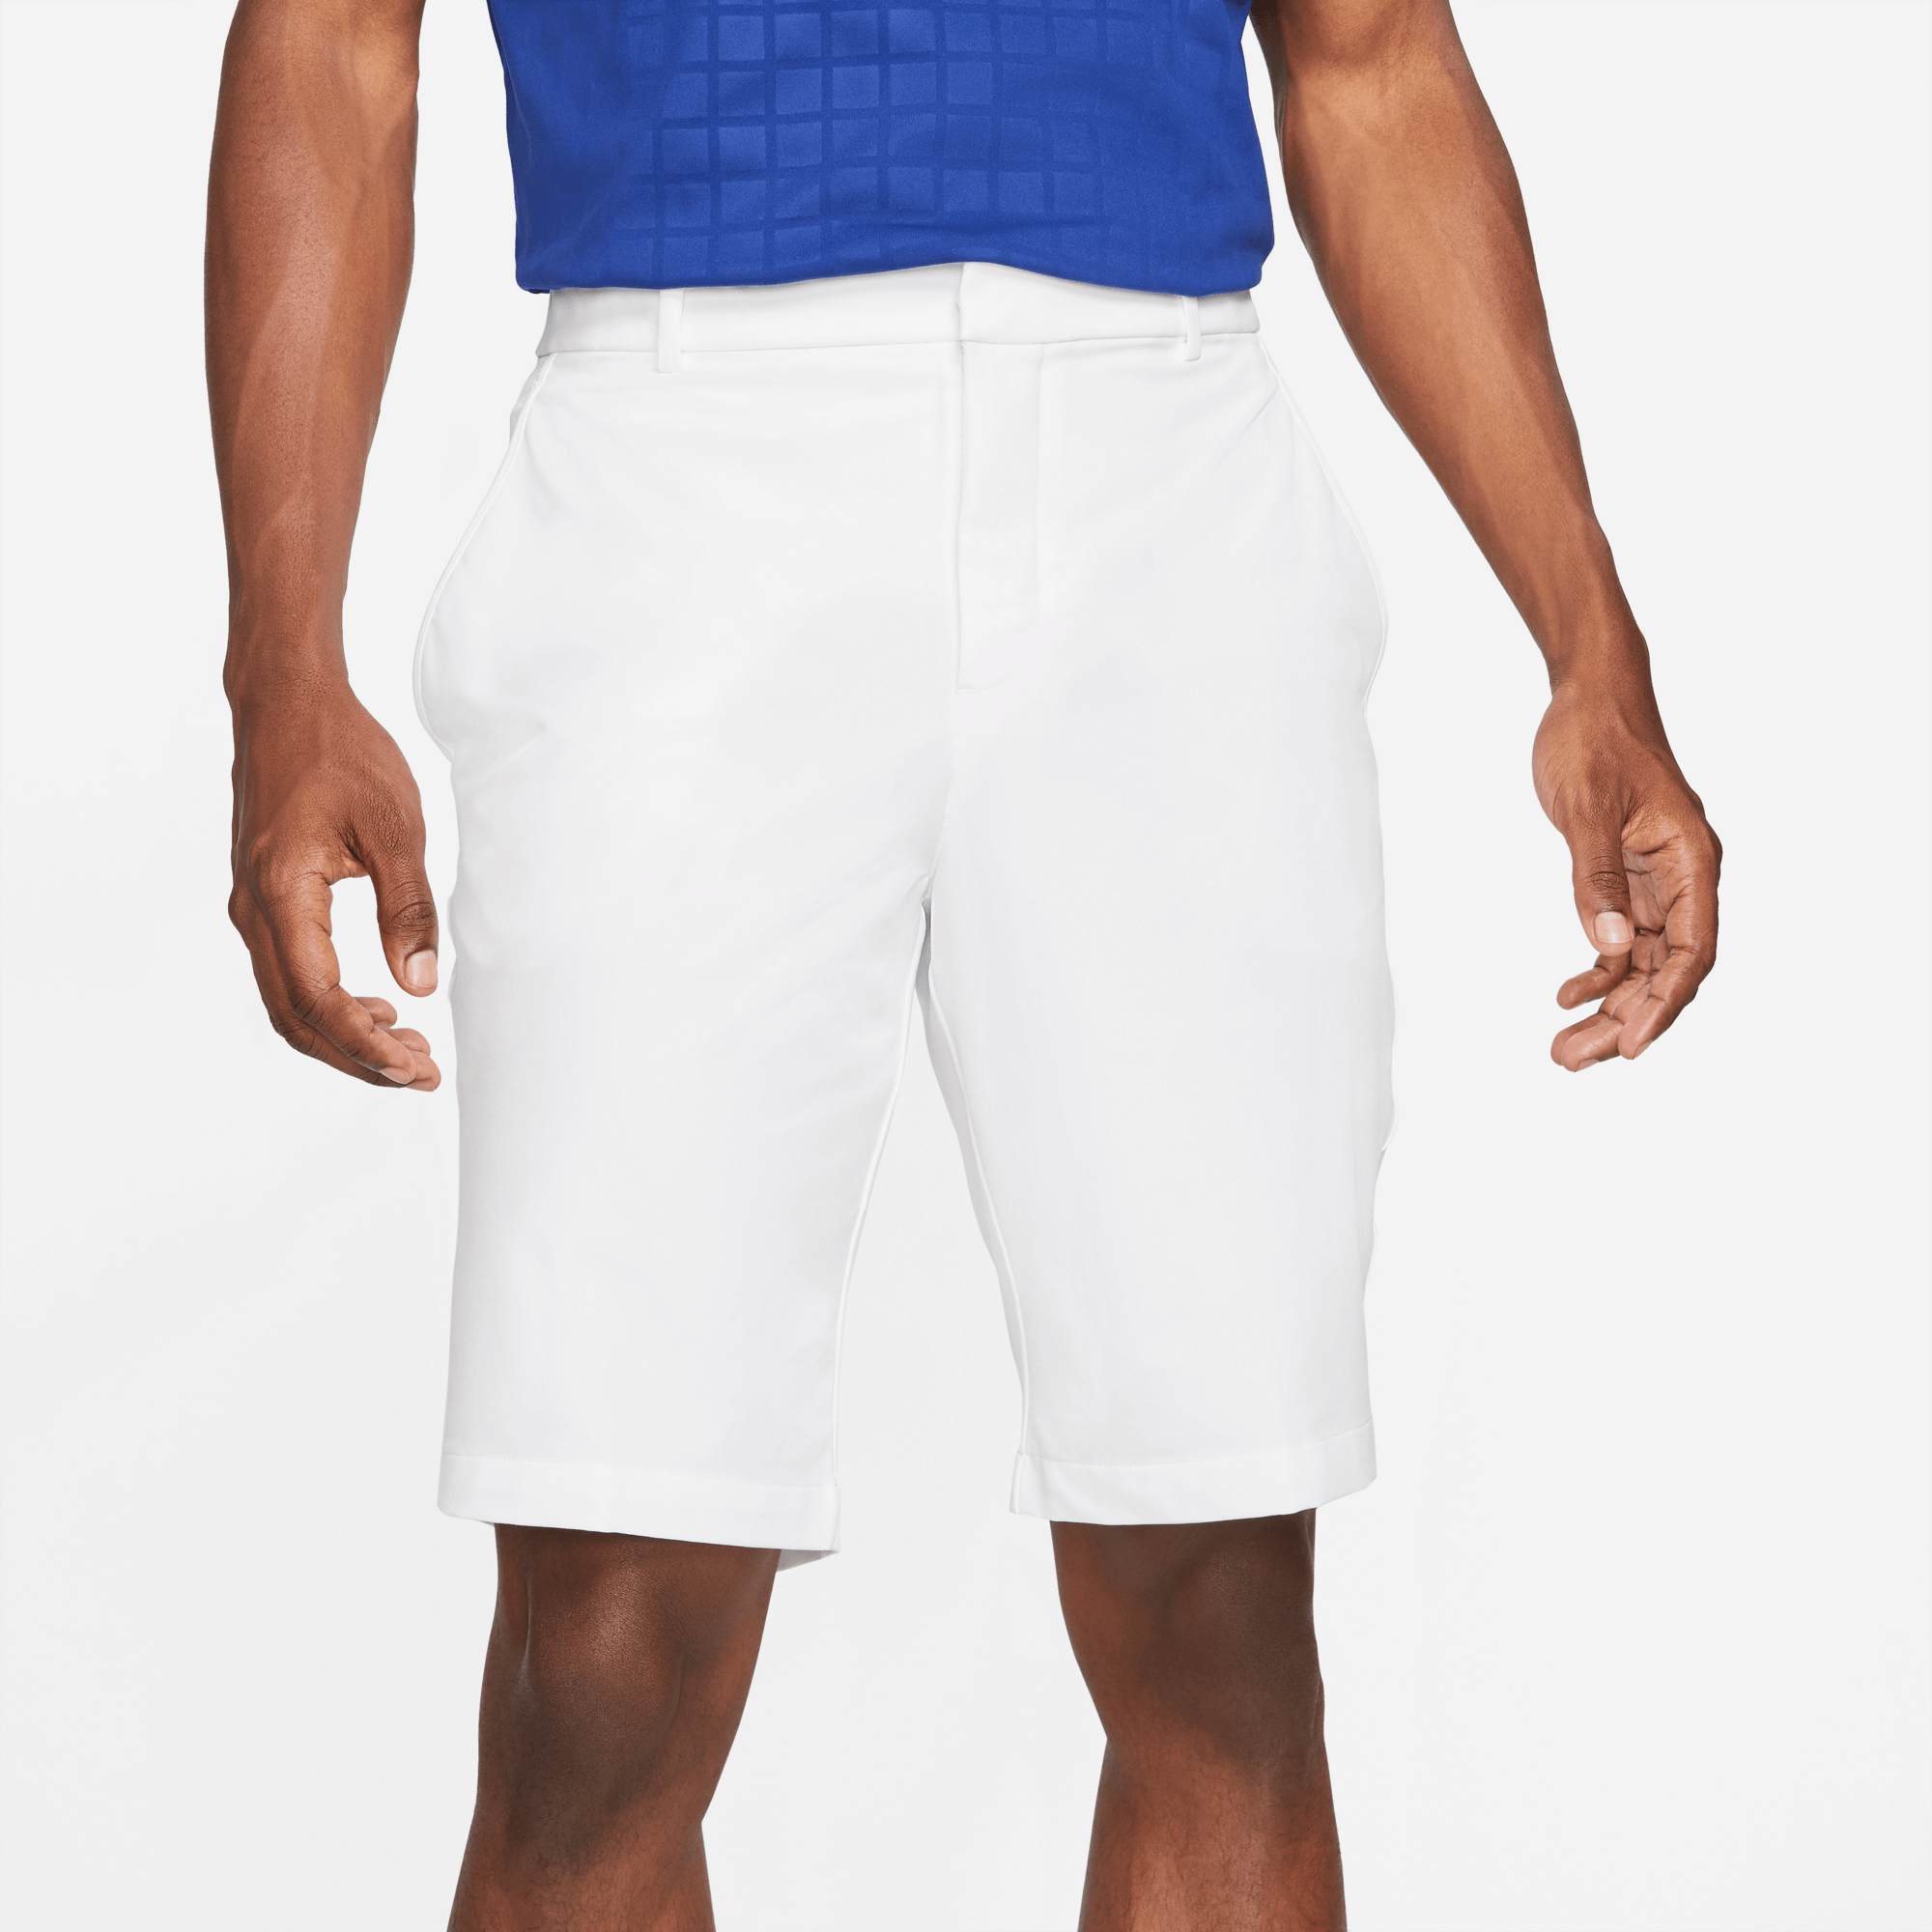 Nike Hybrid Golf Shorts